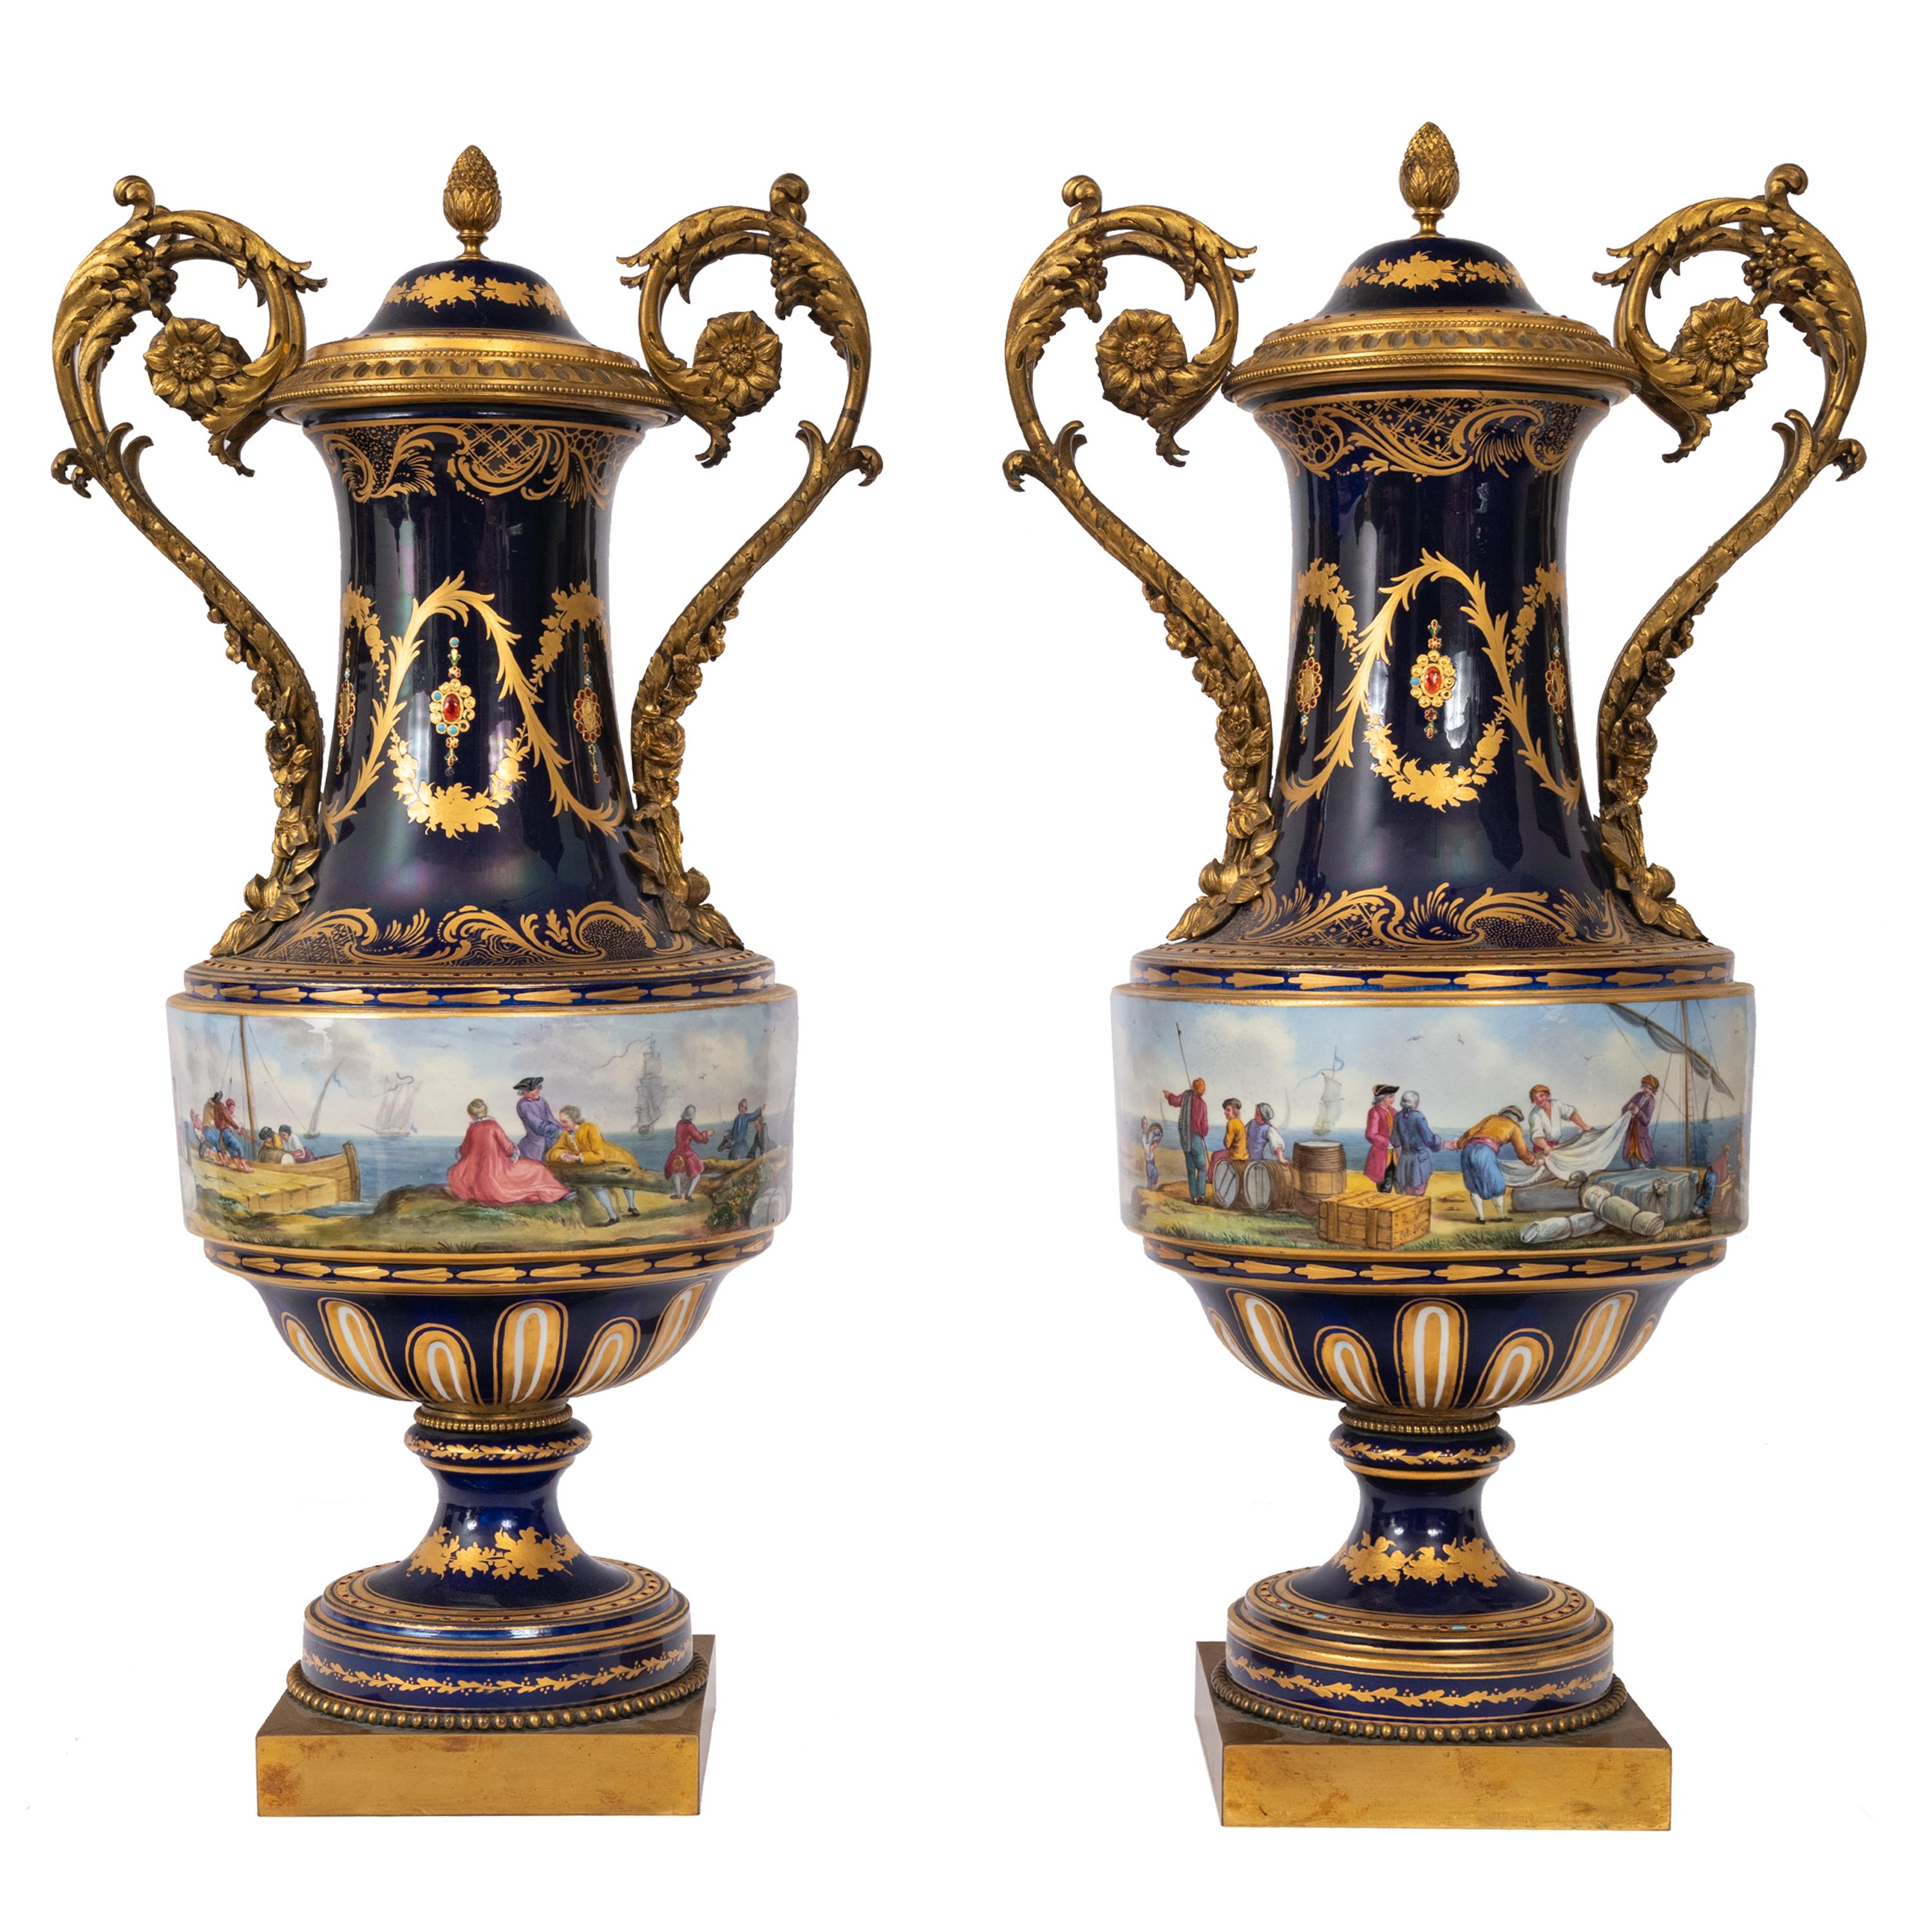 Une paire exceptionnelle et monumentale d'urnes à couvercle en porcelaine de style Sèvres peinte à la main et en bronze doré, vers 1860.
Chaque urne présente un fond bleu cobalt et un couvercle bombé surmonté d'un fleuron en forme d'ananas en